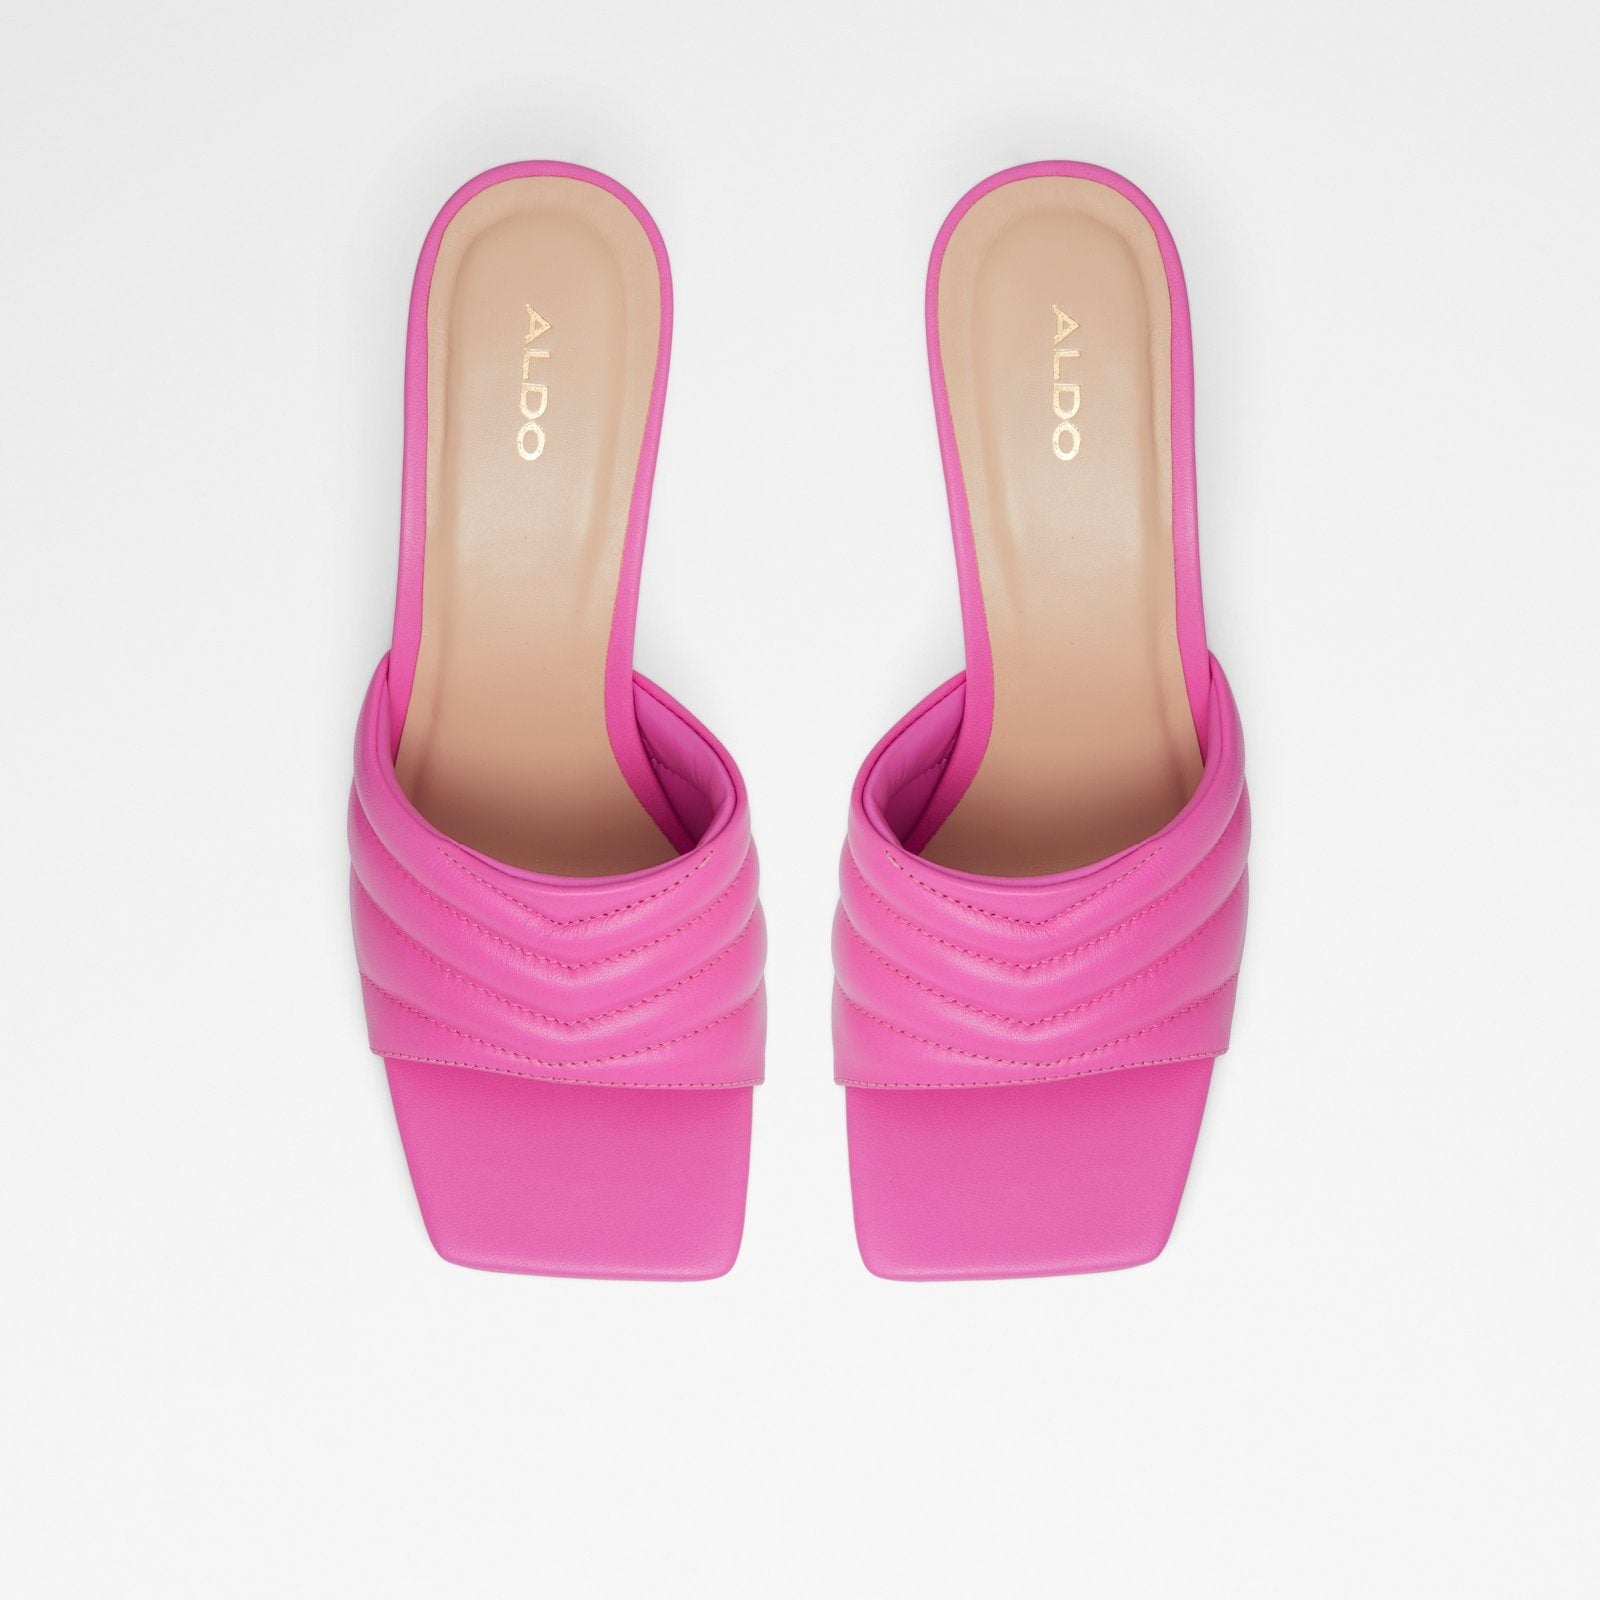 Daniellita Women Shoes - Fuchsia - ALDO KSA